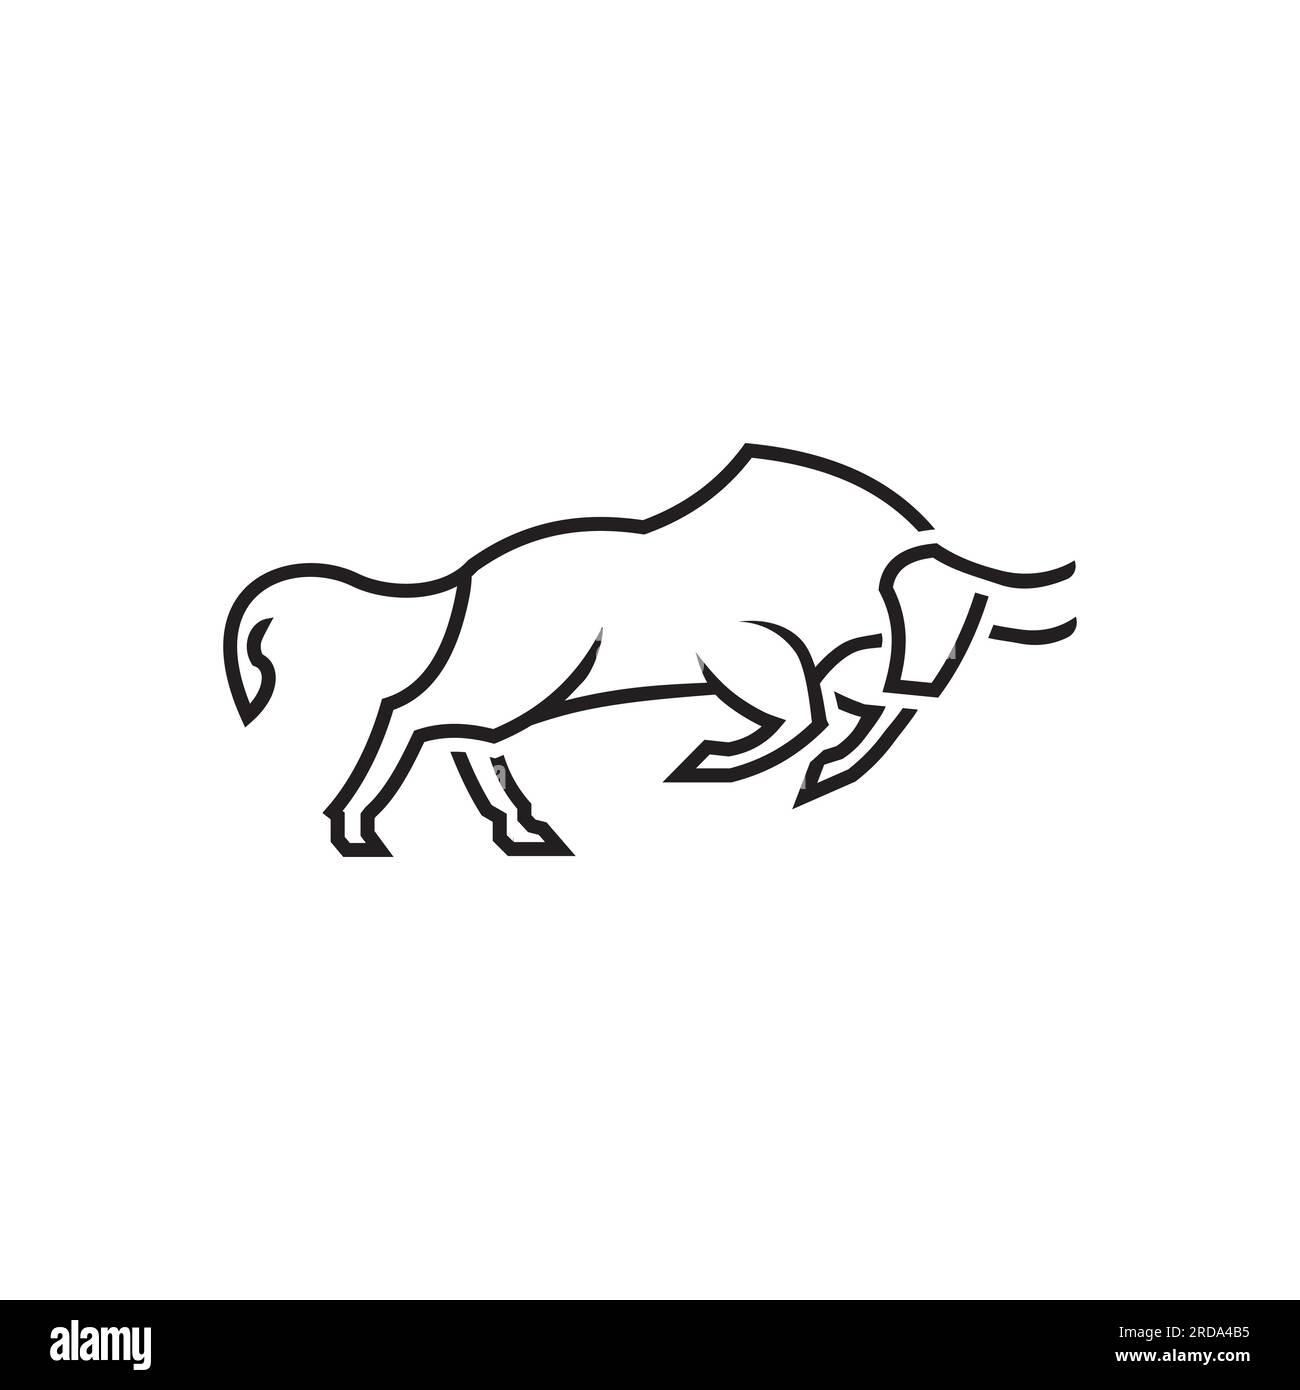 Angry Bull ou Taurus logo Mascot. Illustration vectorielle, icône de logo Premium Business. Couleur blanche sur fond noir Illustration de Vecteur